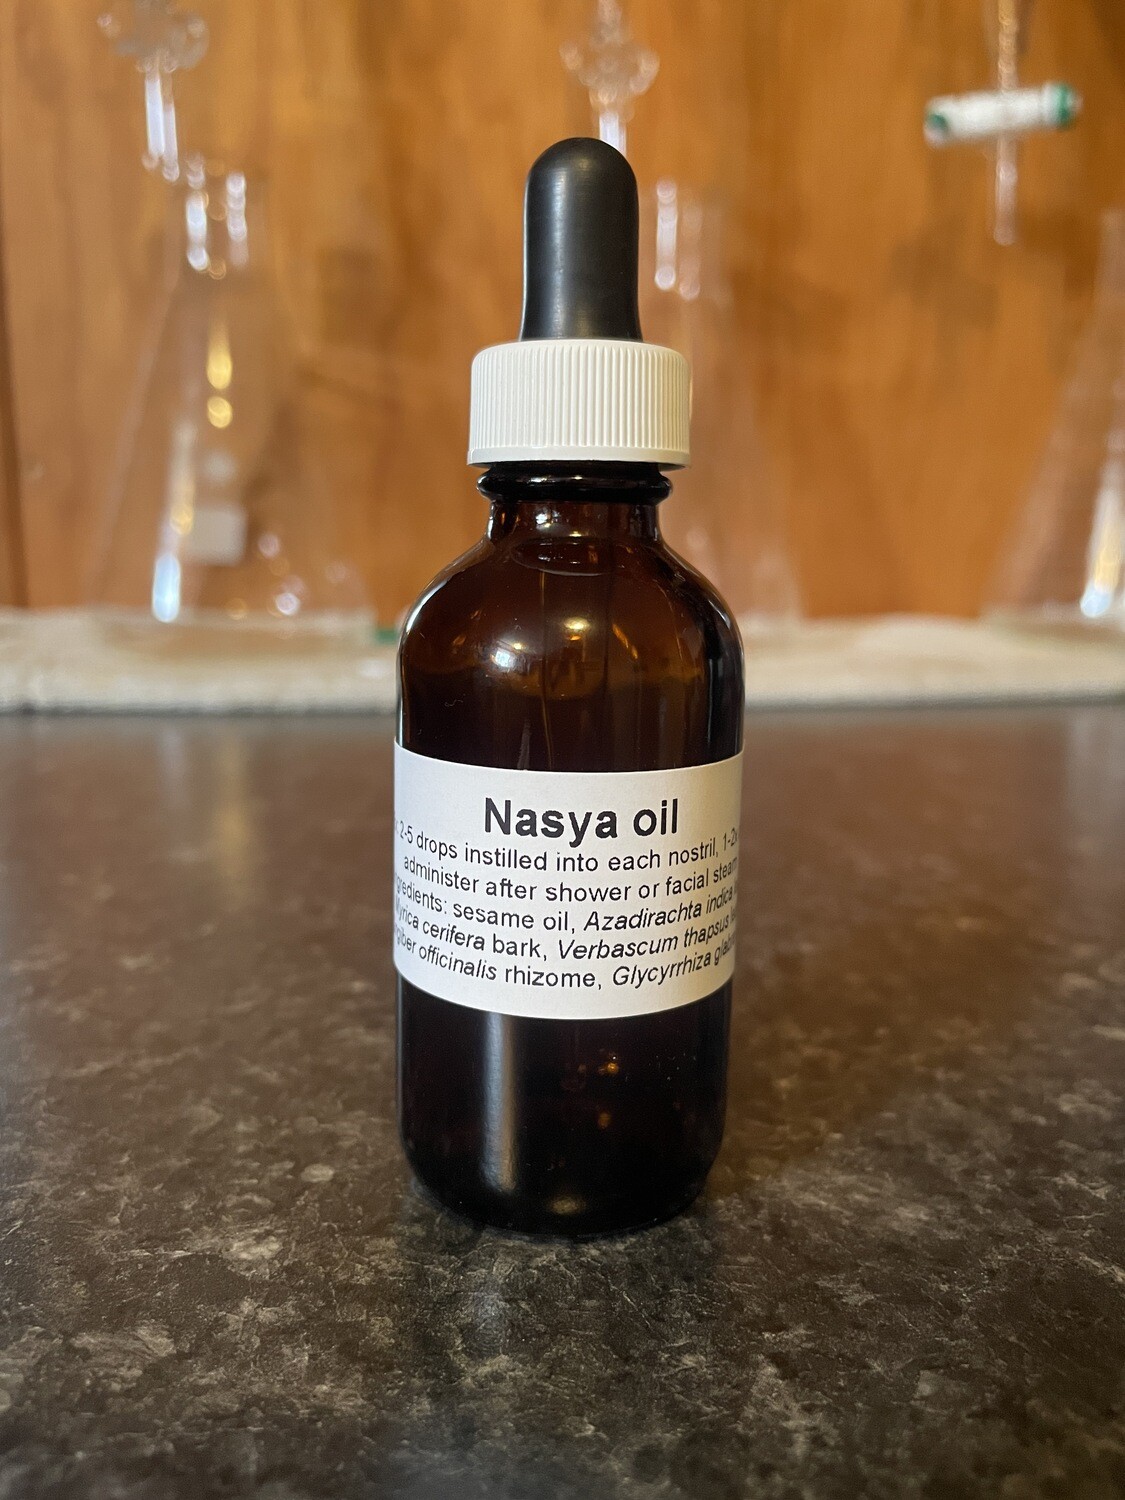 Nasya oil